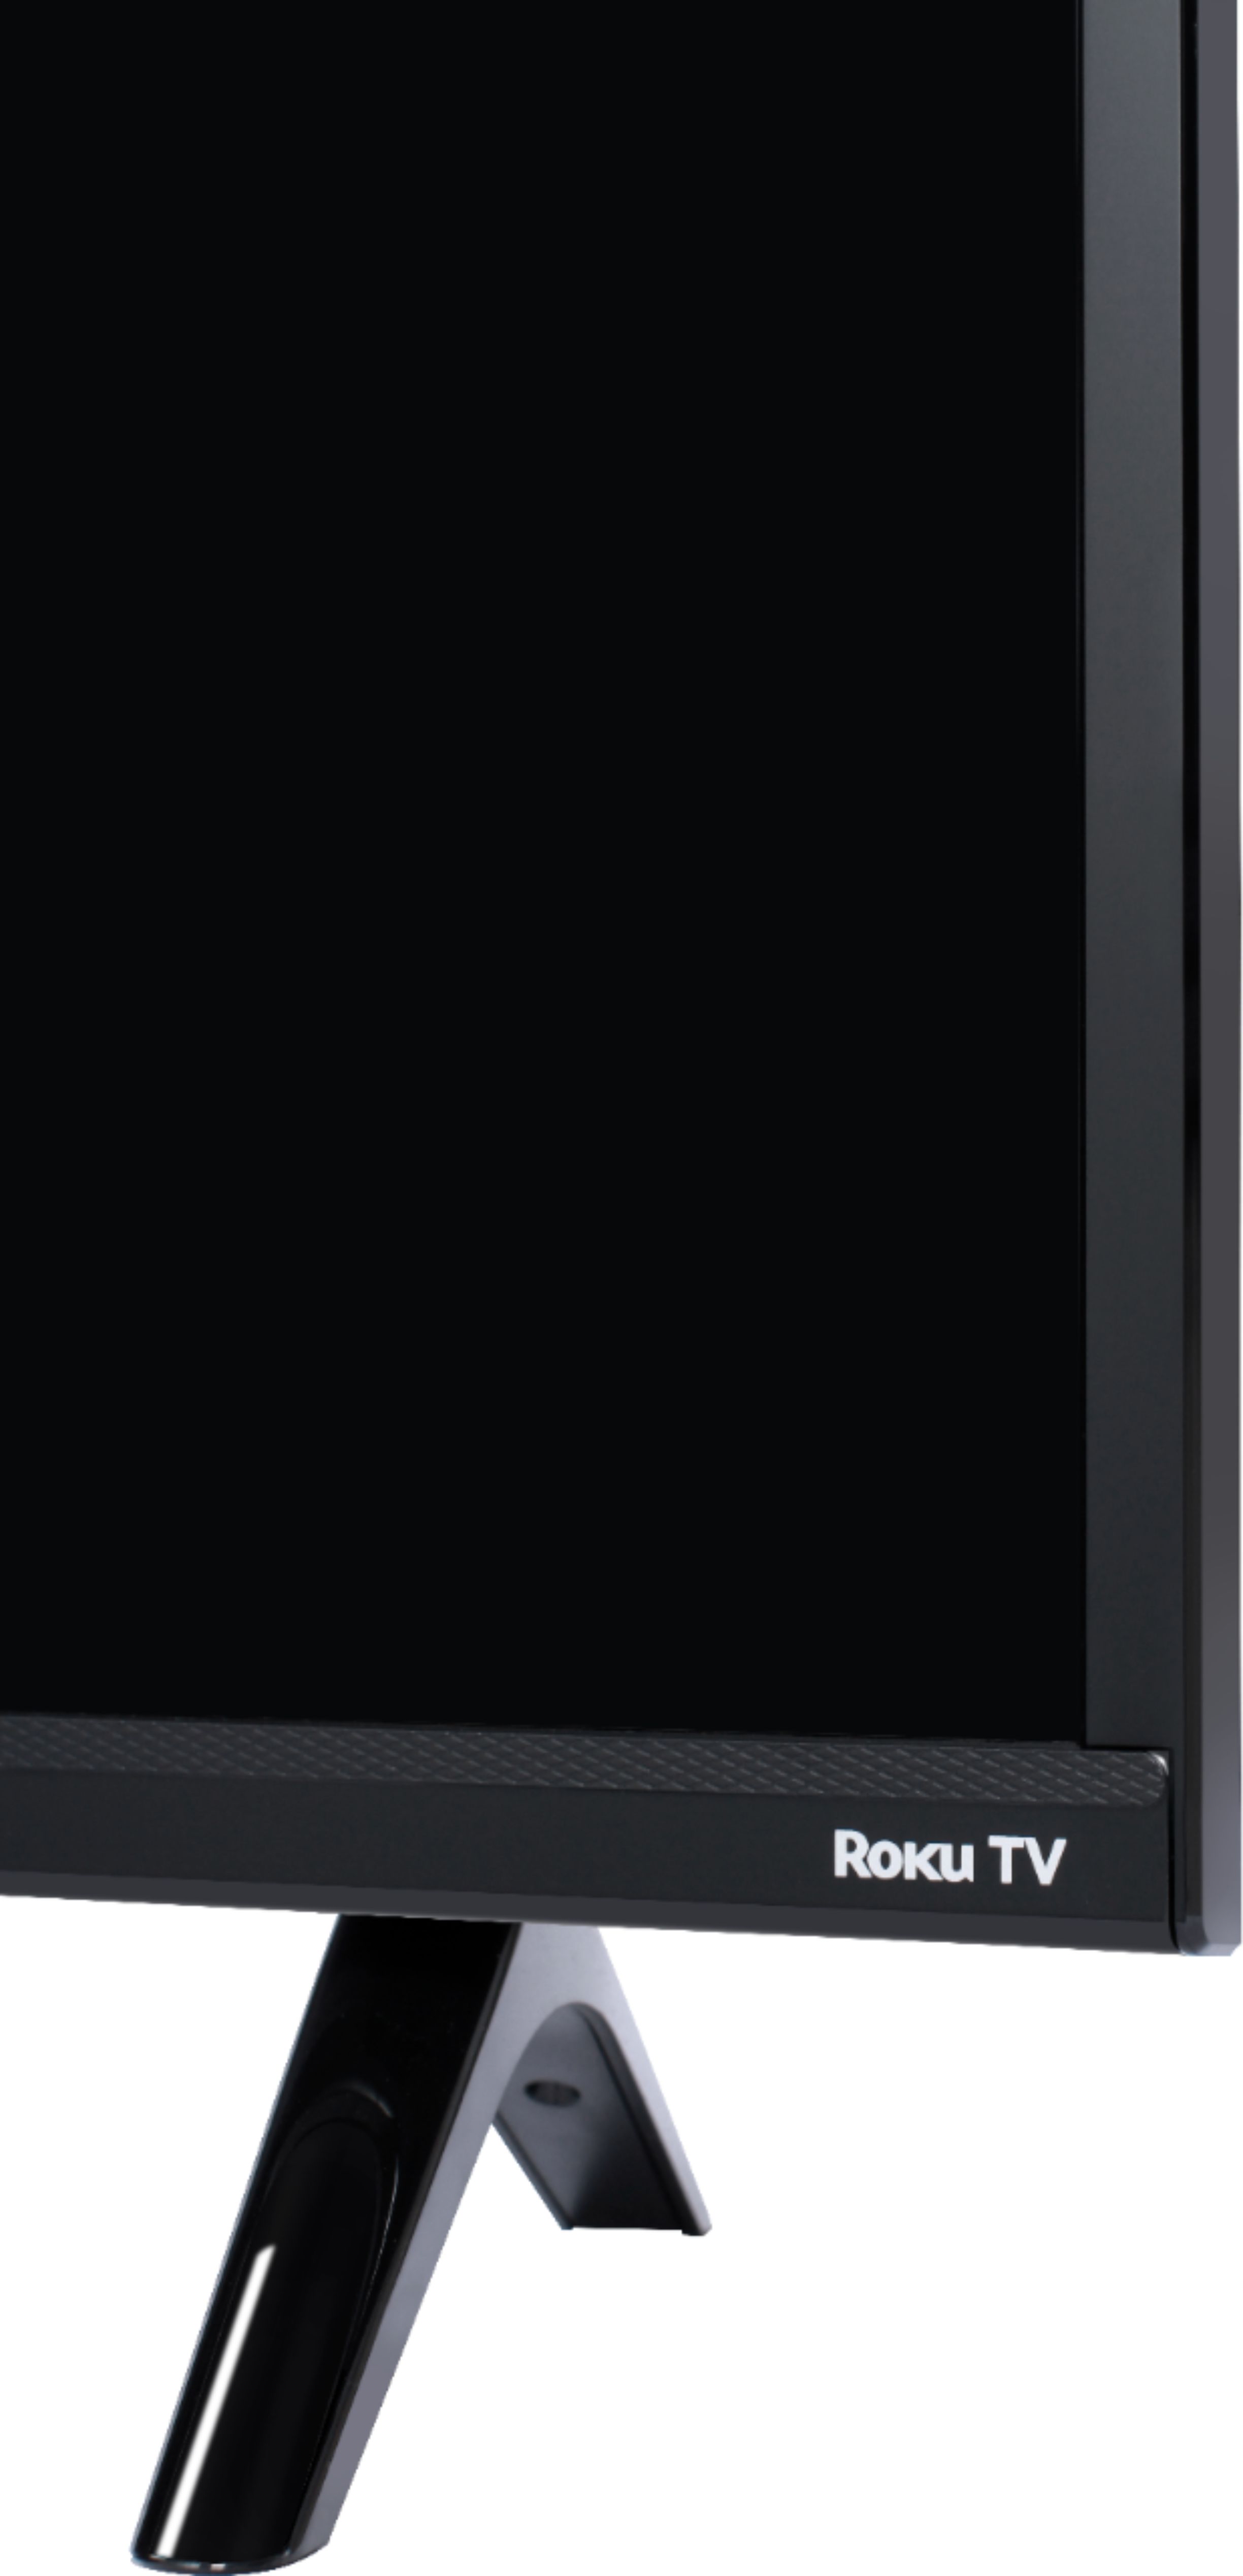 TV LED - TCL 50P631, 50 pulgadas, 4K UHD, HDR10, Game Master